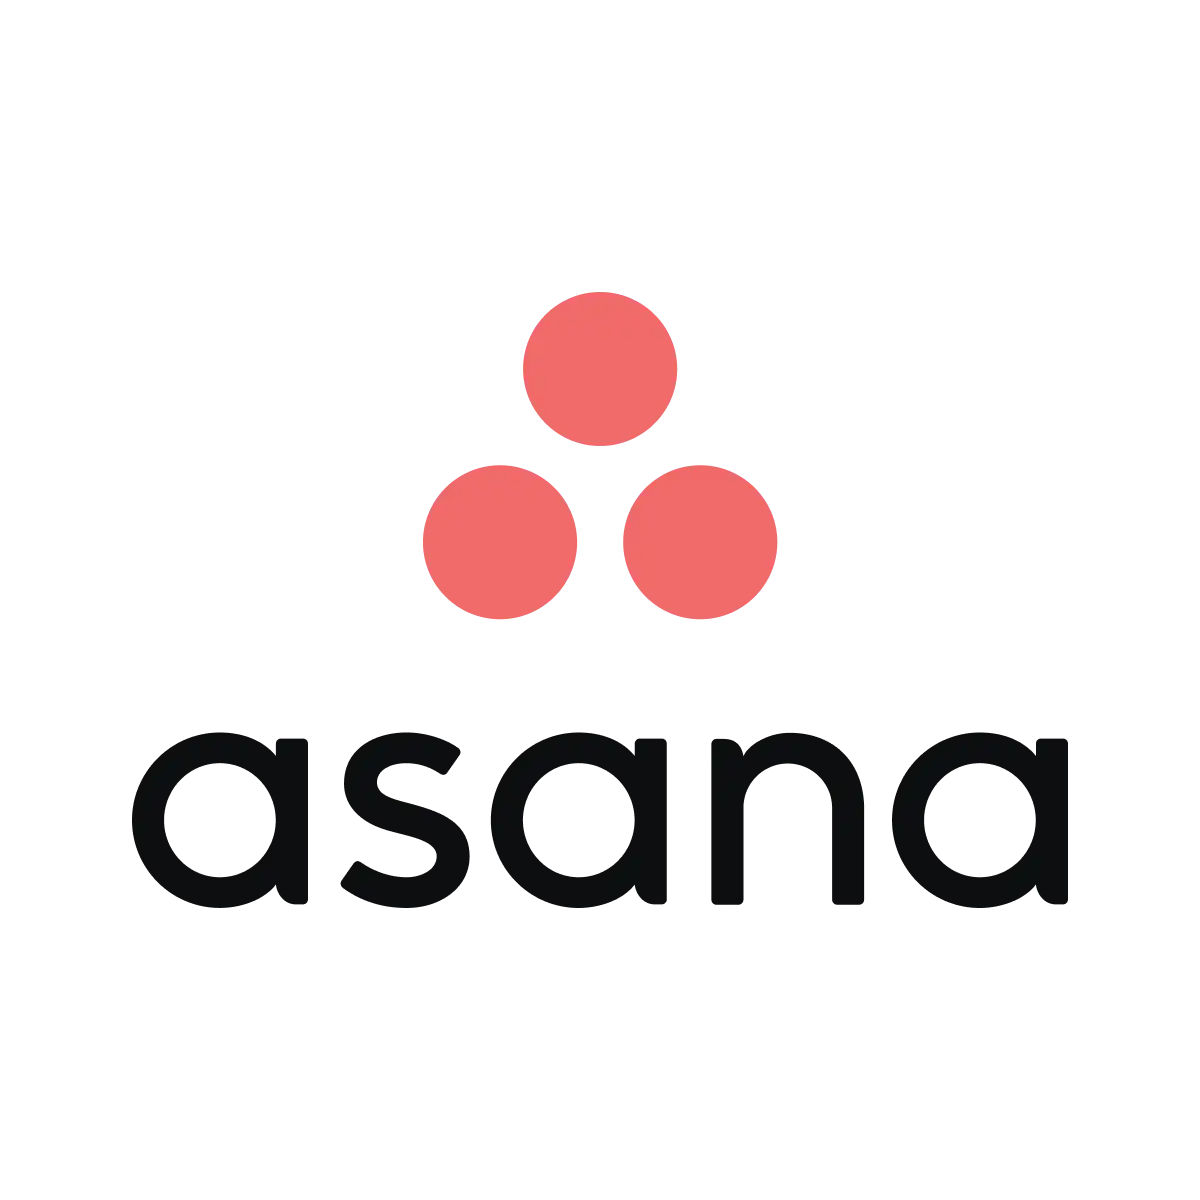 Asana projectmanagement